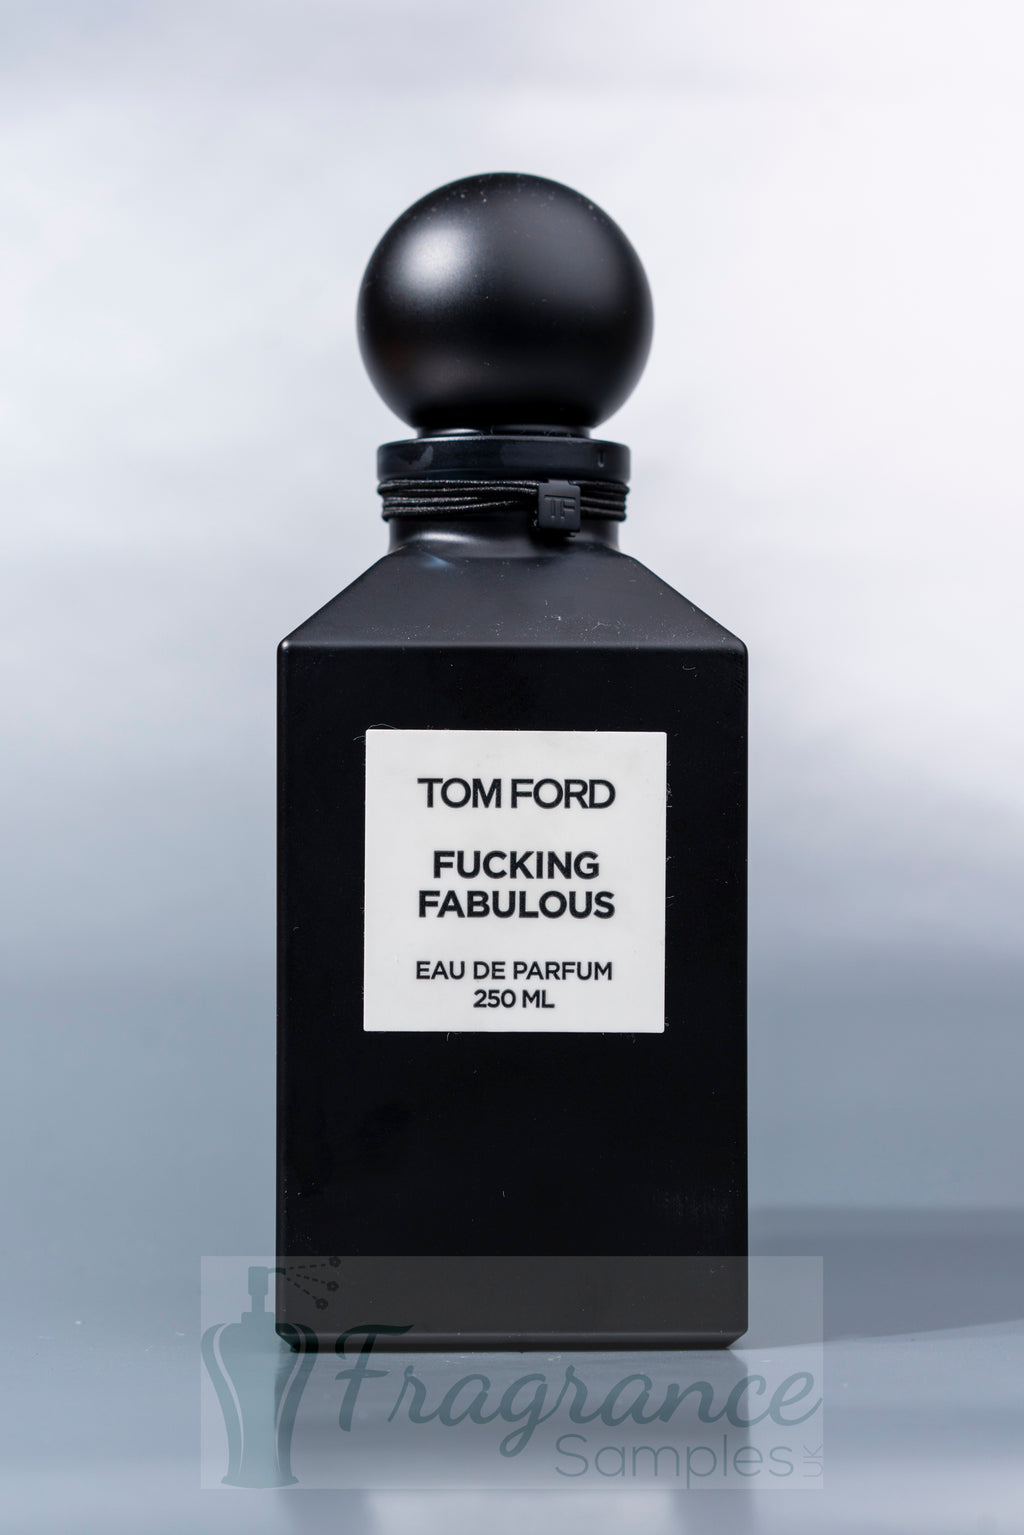 Tom Ford Perfume Samples - Fragrance Samples UK